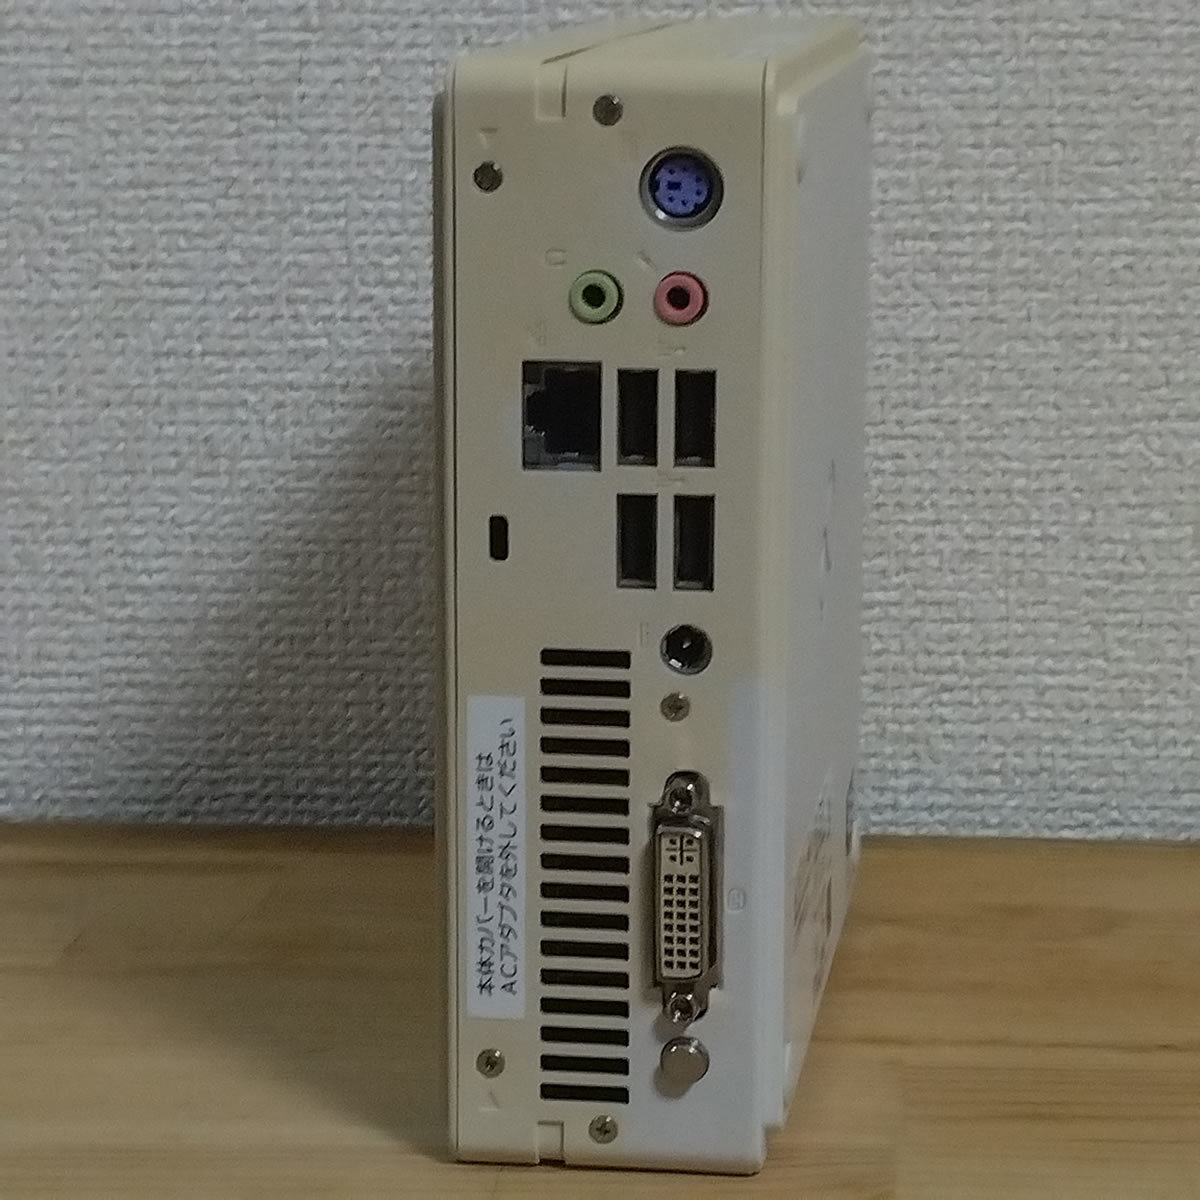 [ бесплатная доставка * быстрое решение ]Fujitsu ESPRIMO B532/G FMVB01005 Core i7-3770T память нет /HDD нет Junk 